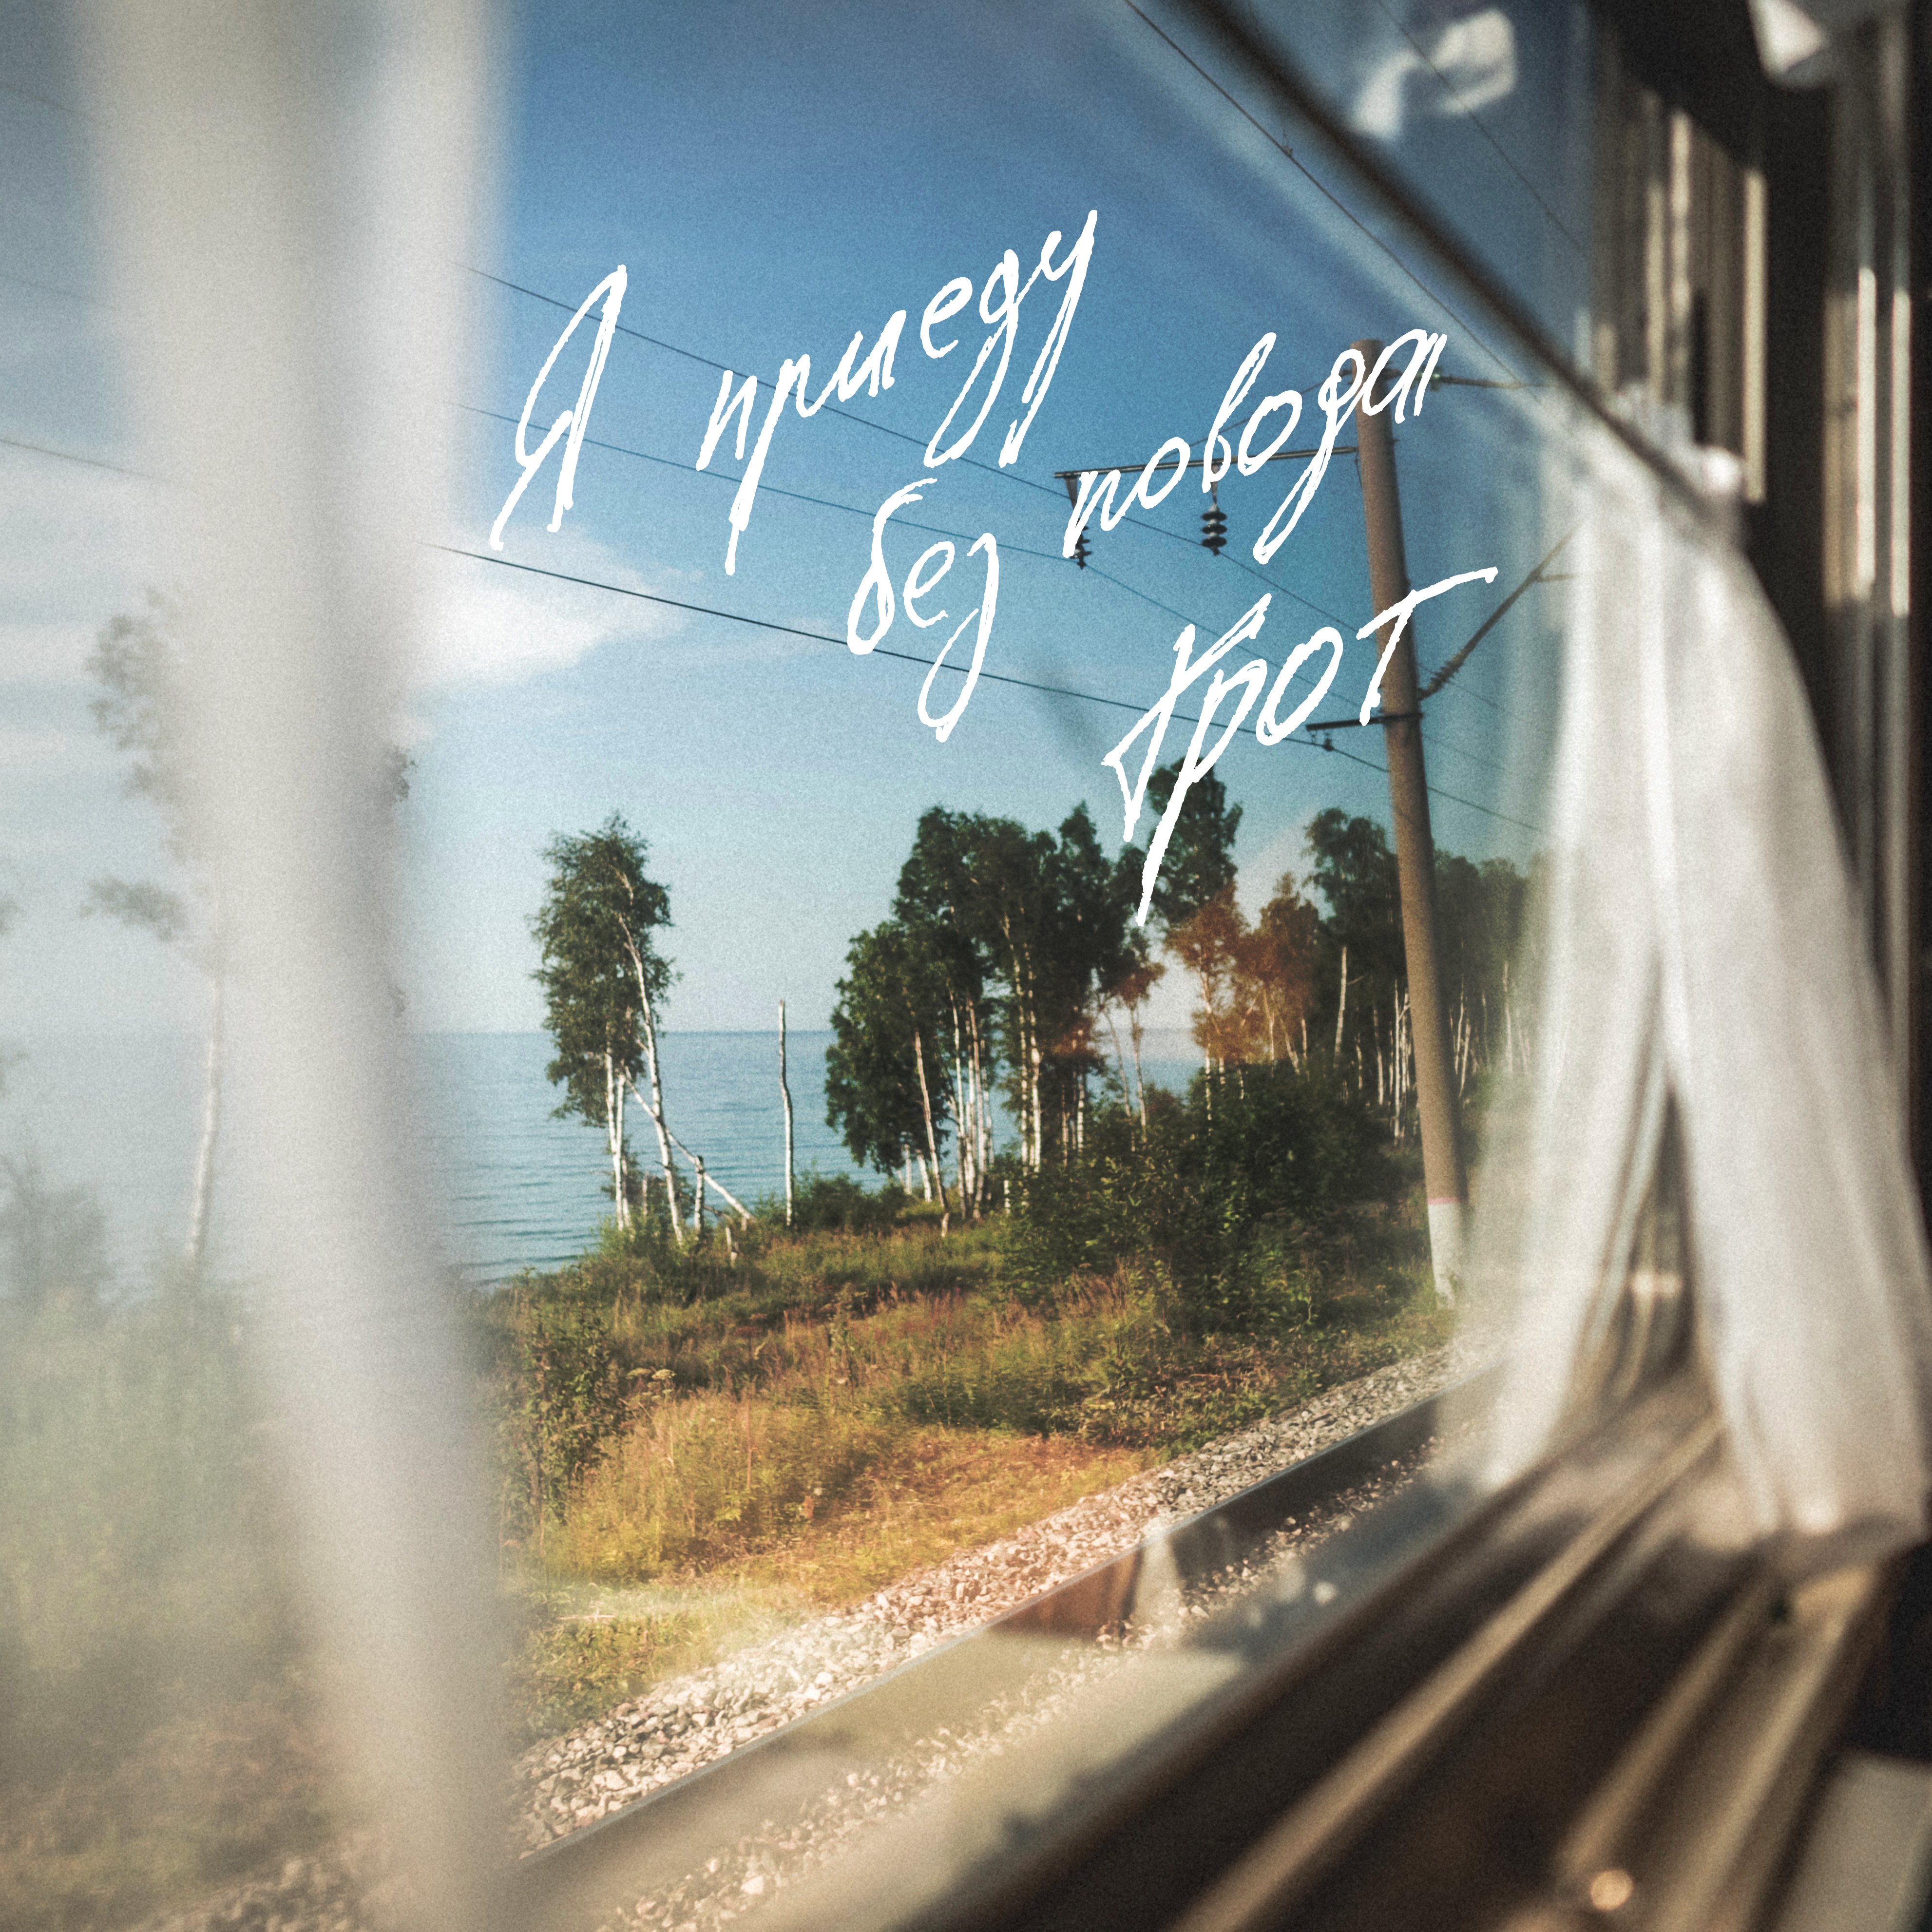 Песня по любому поводу меня. Я приеду без повода грот. Вид из окна поезда. Окно поезда. Пейзаж из окна поезда.